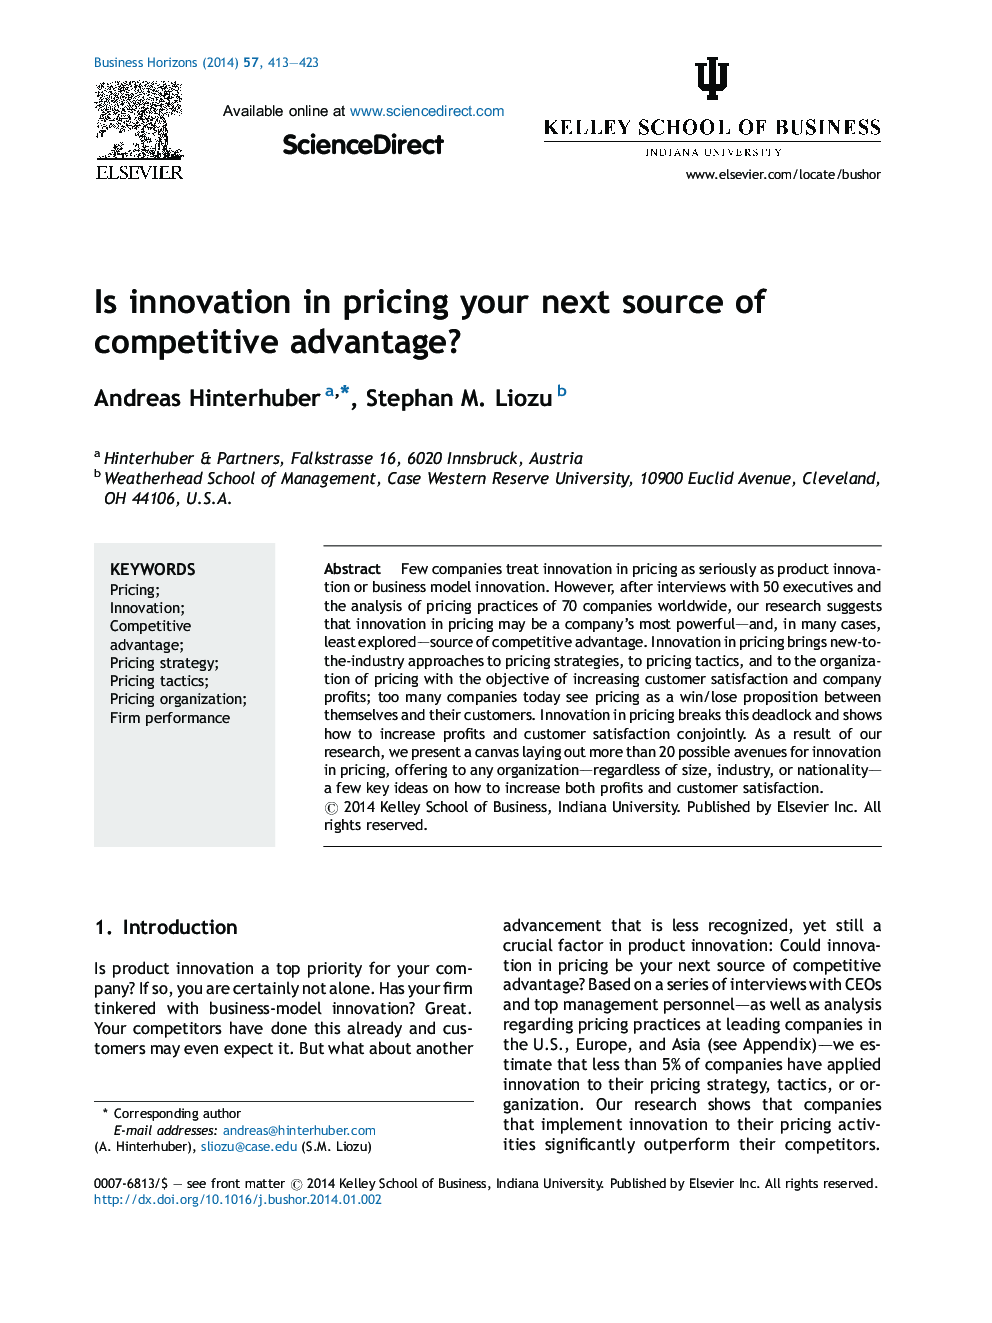 آیا نوآوری در قیمت گذاری منبع بعدی مزیت رقابتی شماست؟ 